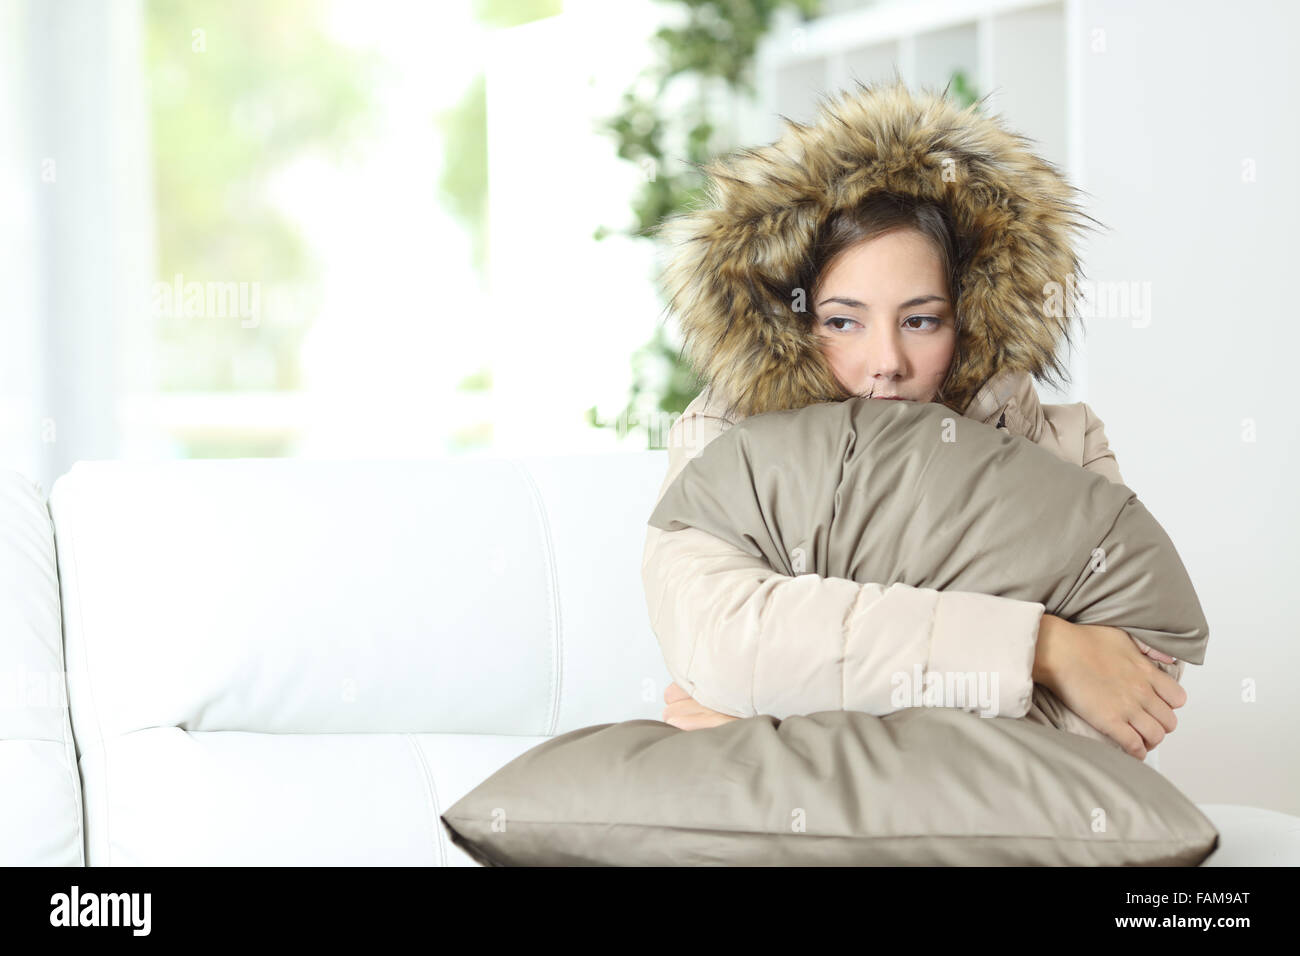 Böse Frau warm gekleidet in eine kalte Heimat sitzen auf einer couch Stockfoto